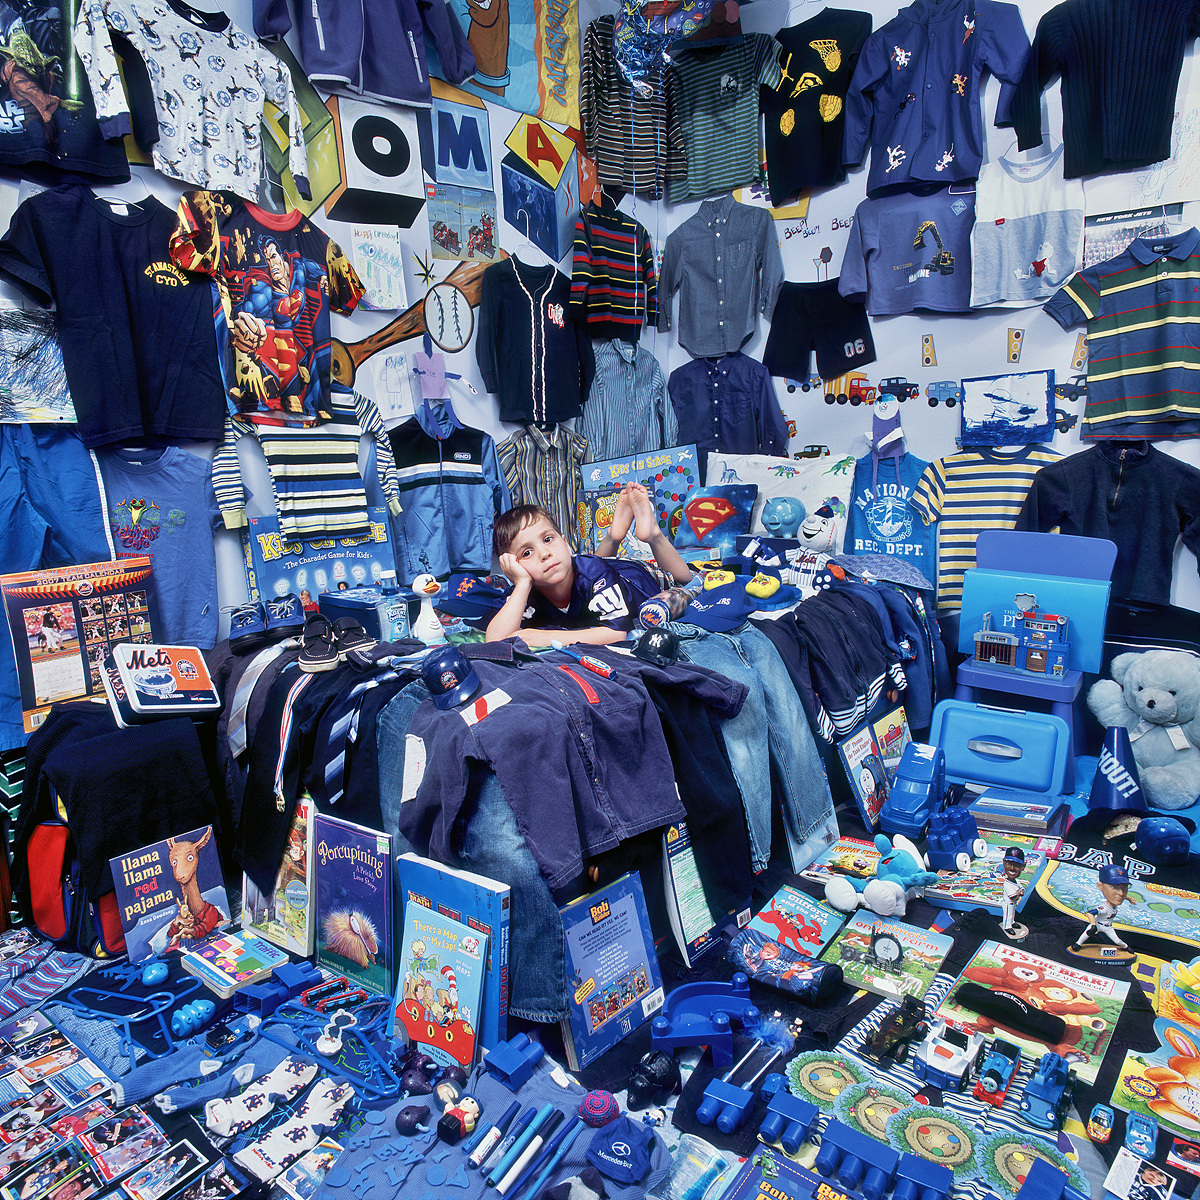 블루 프로젝트 2 토마스와 토마스의 파란색 물건들, 뉴욕, 미국, 라이트젯 프린트, 2009 - 